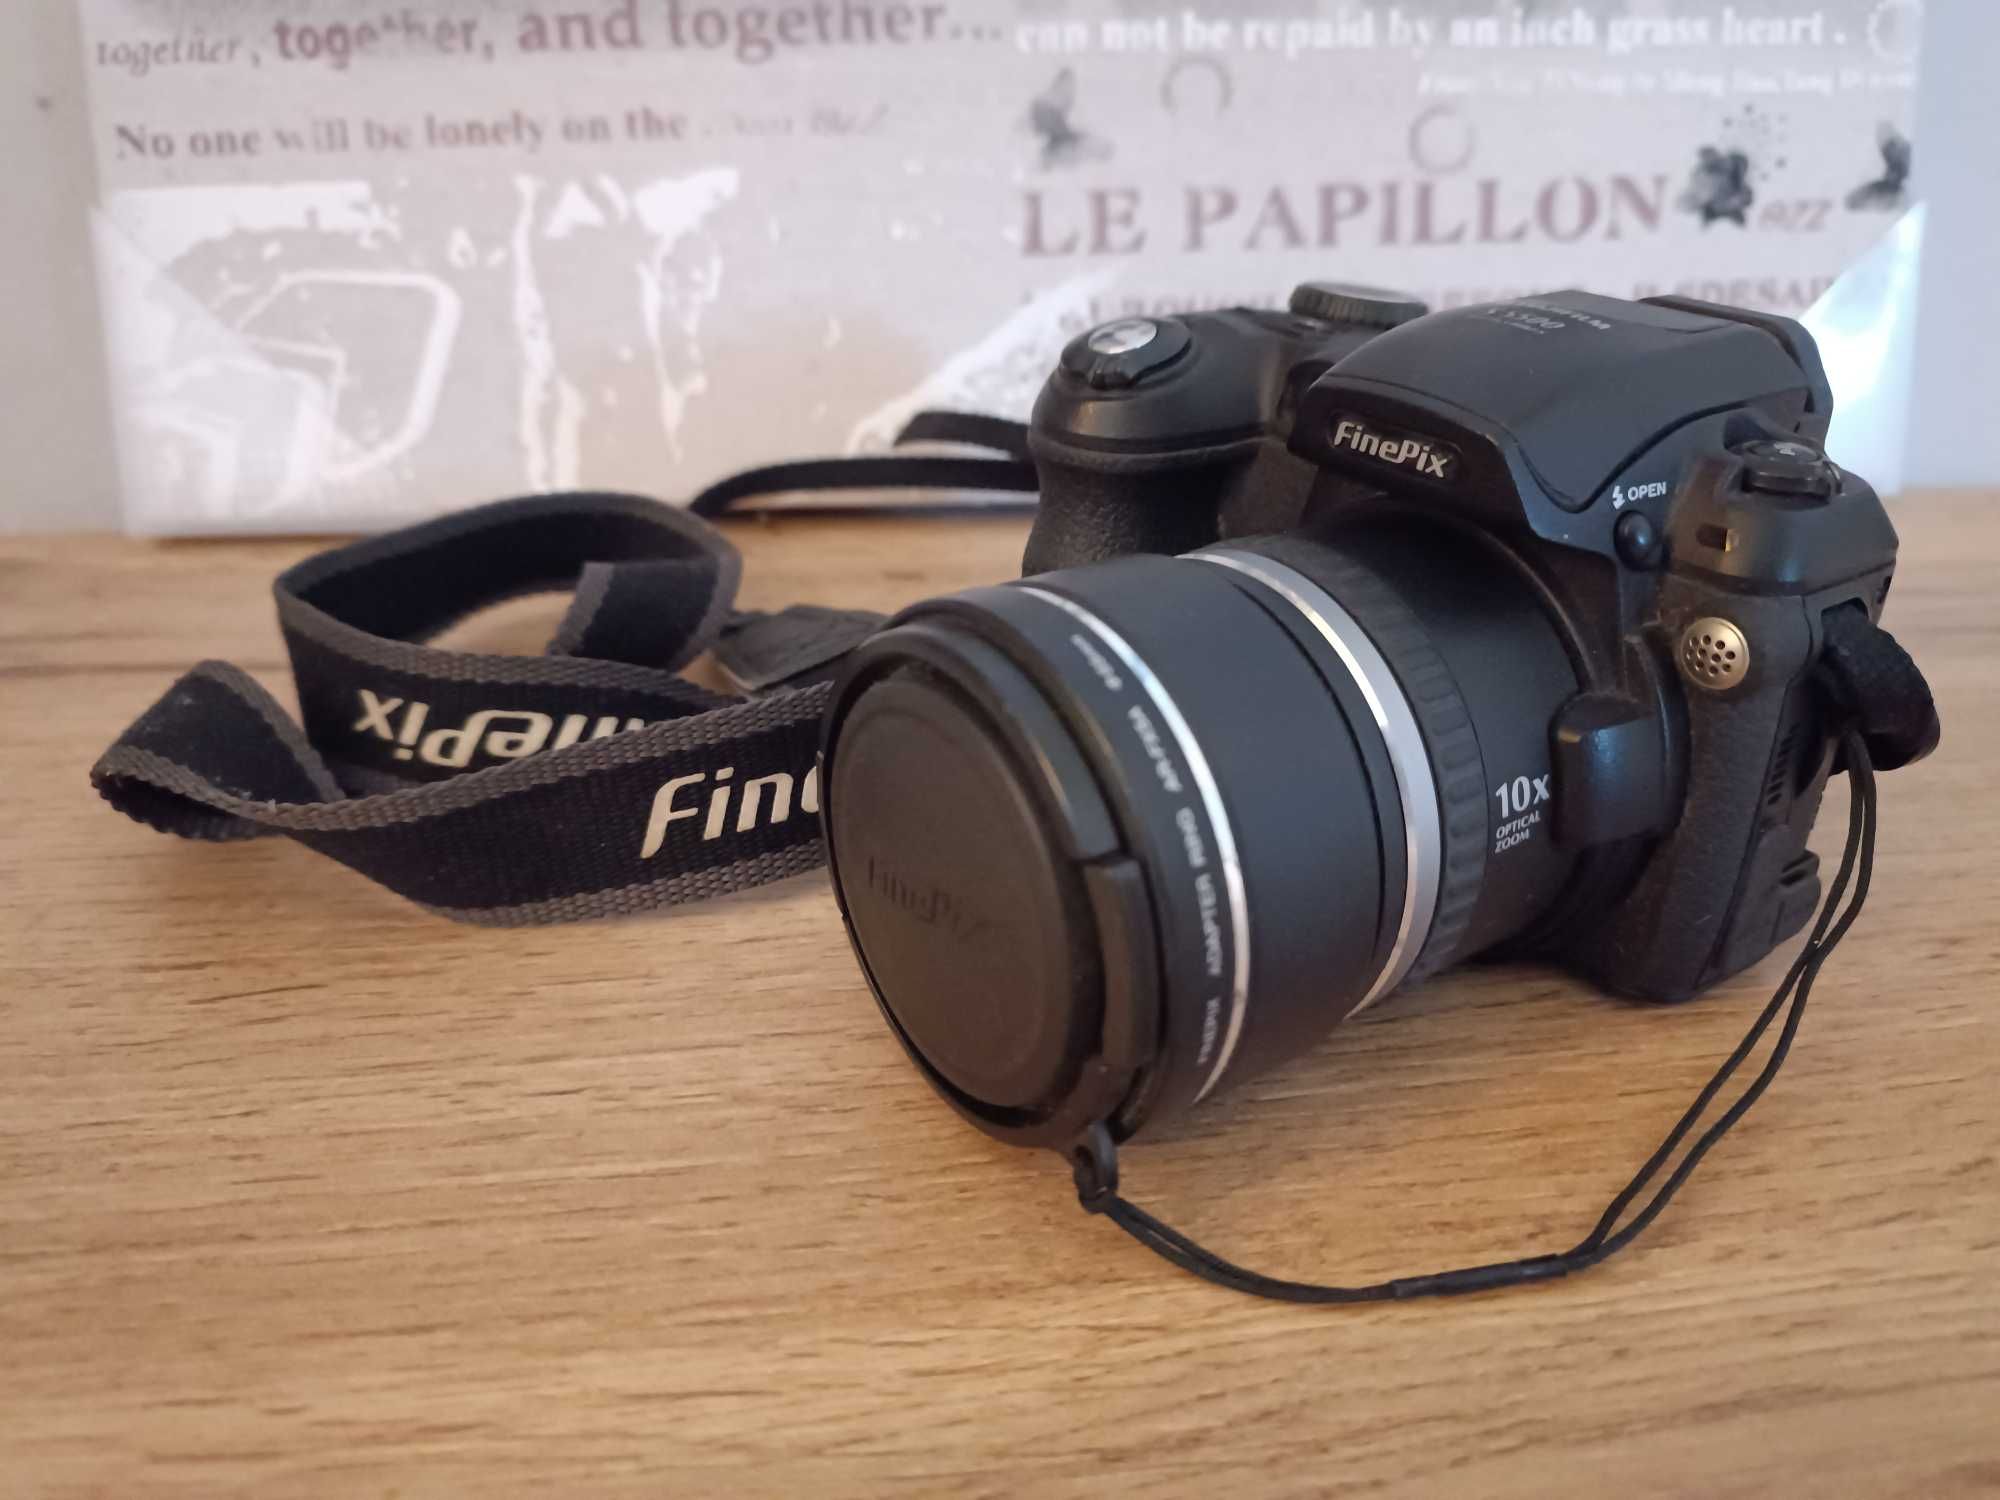 Fujifilm FinePix S5500